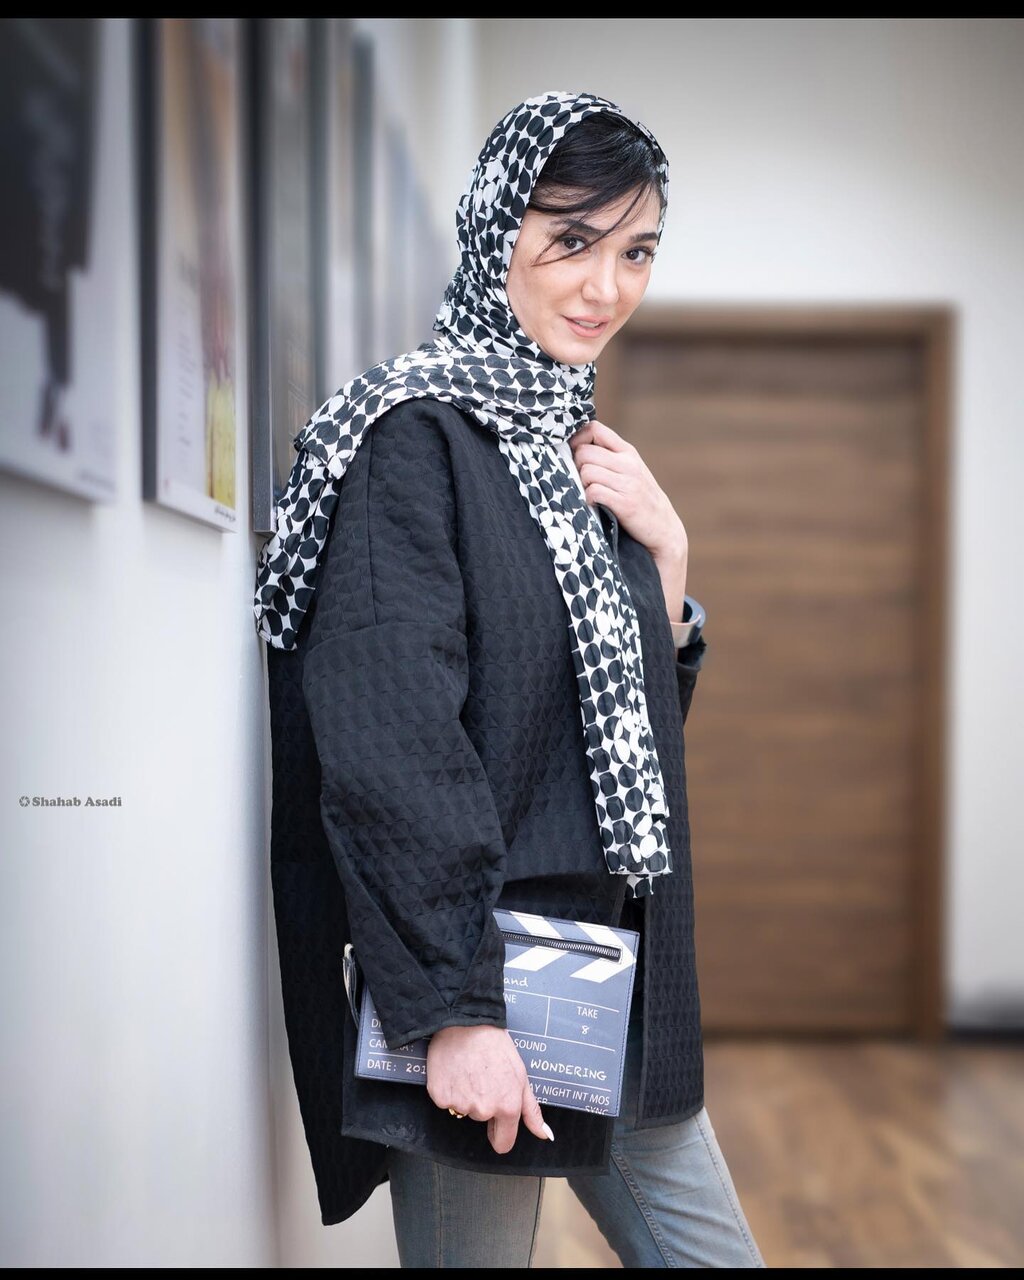 کیف متفاوت بازیگر سریال بانوی عمارت در یک مراسم+ عکس